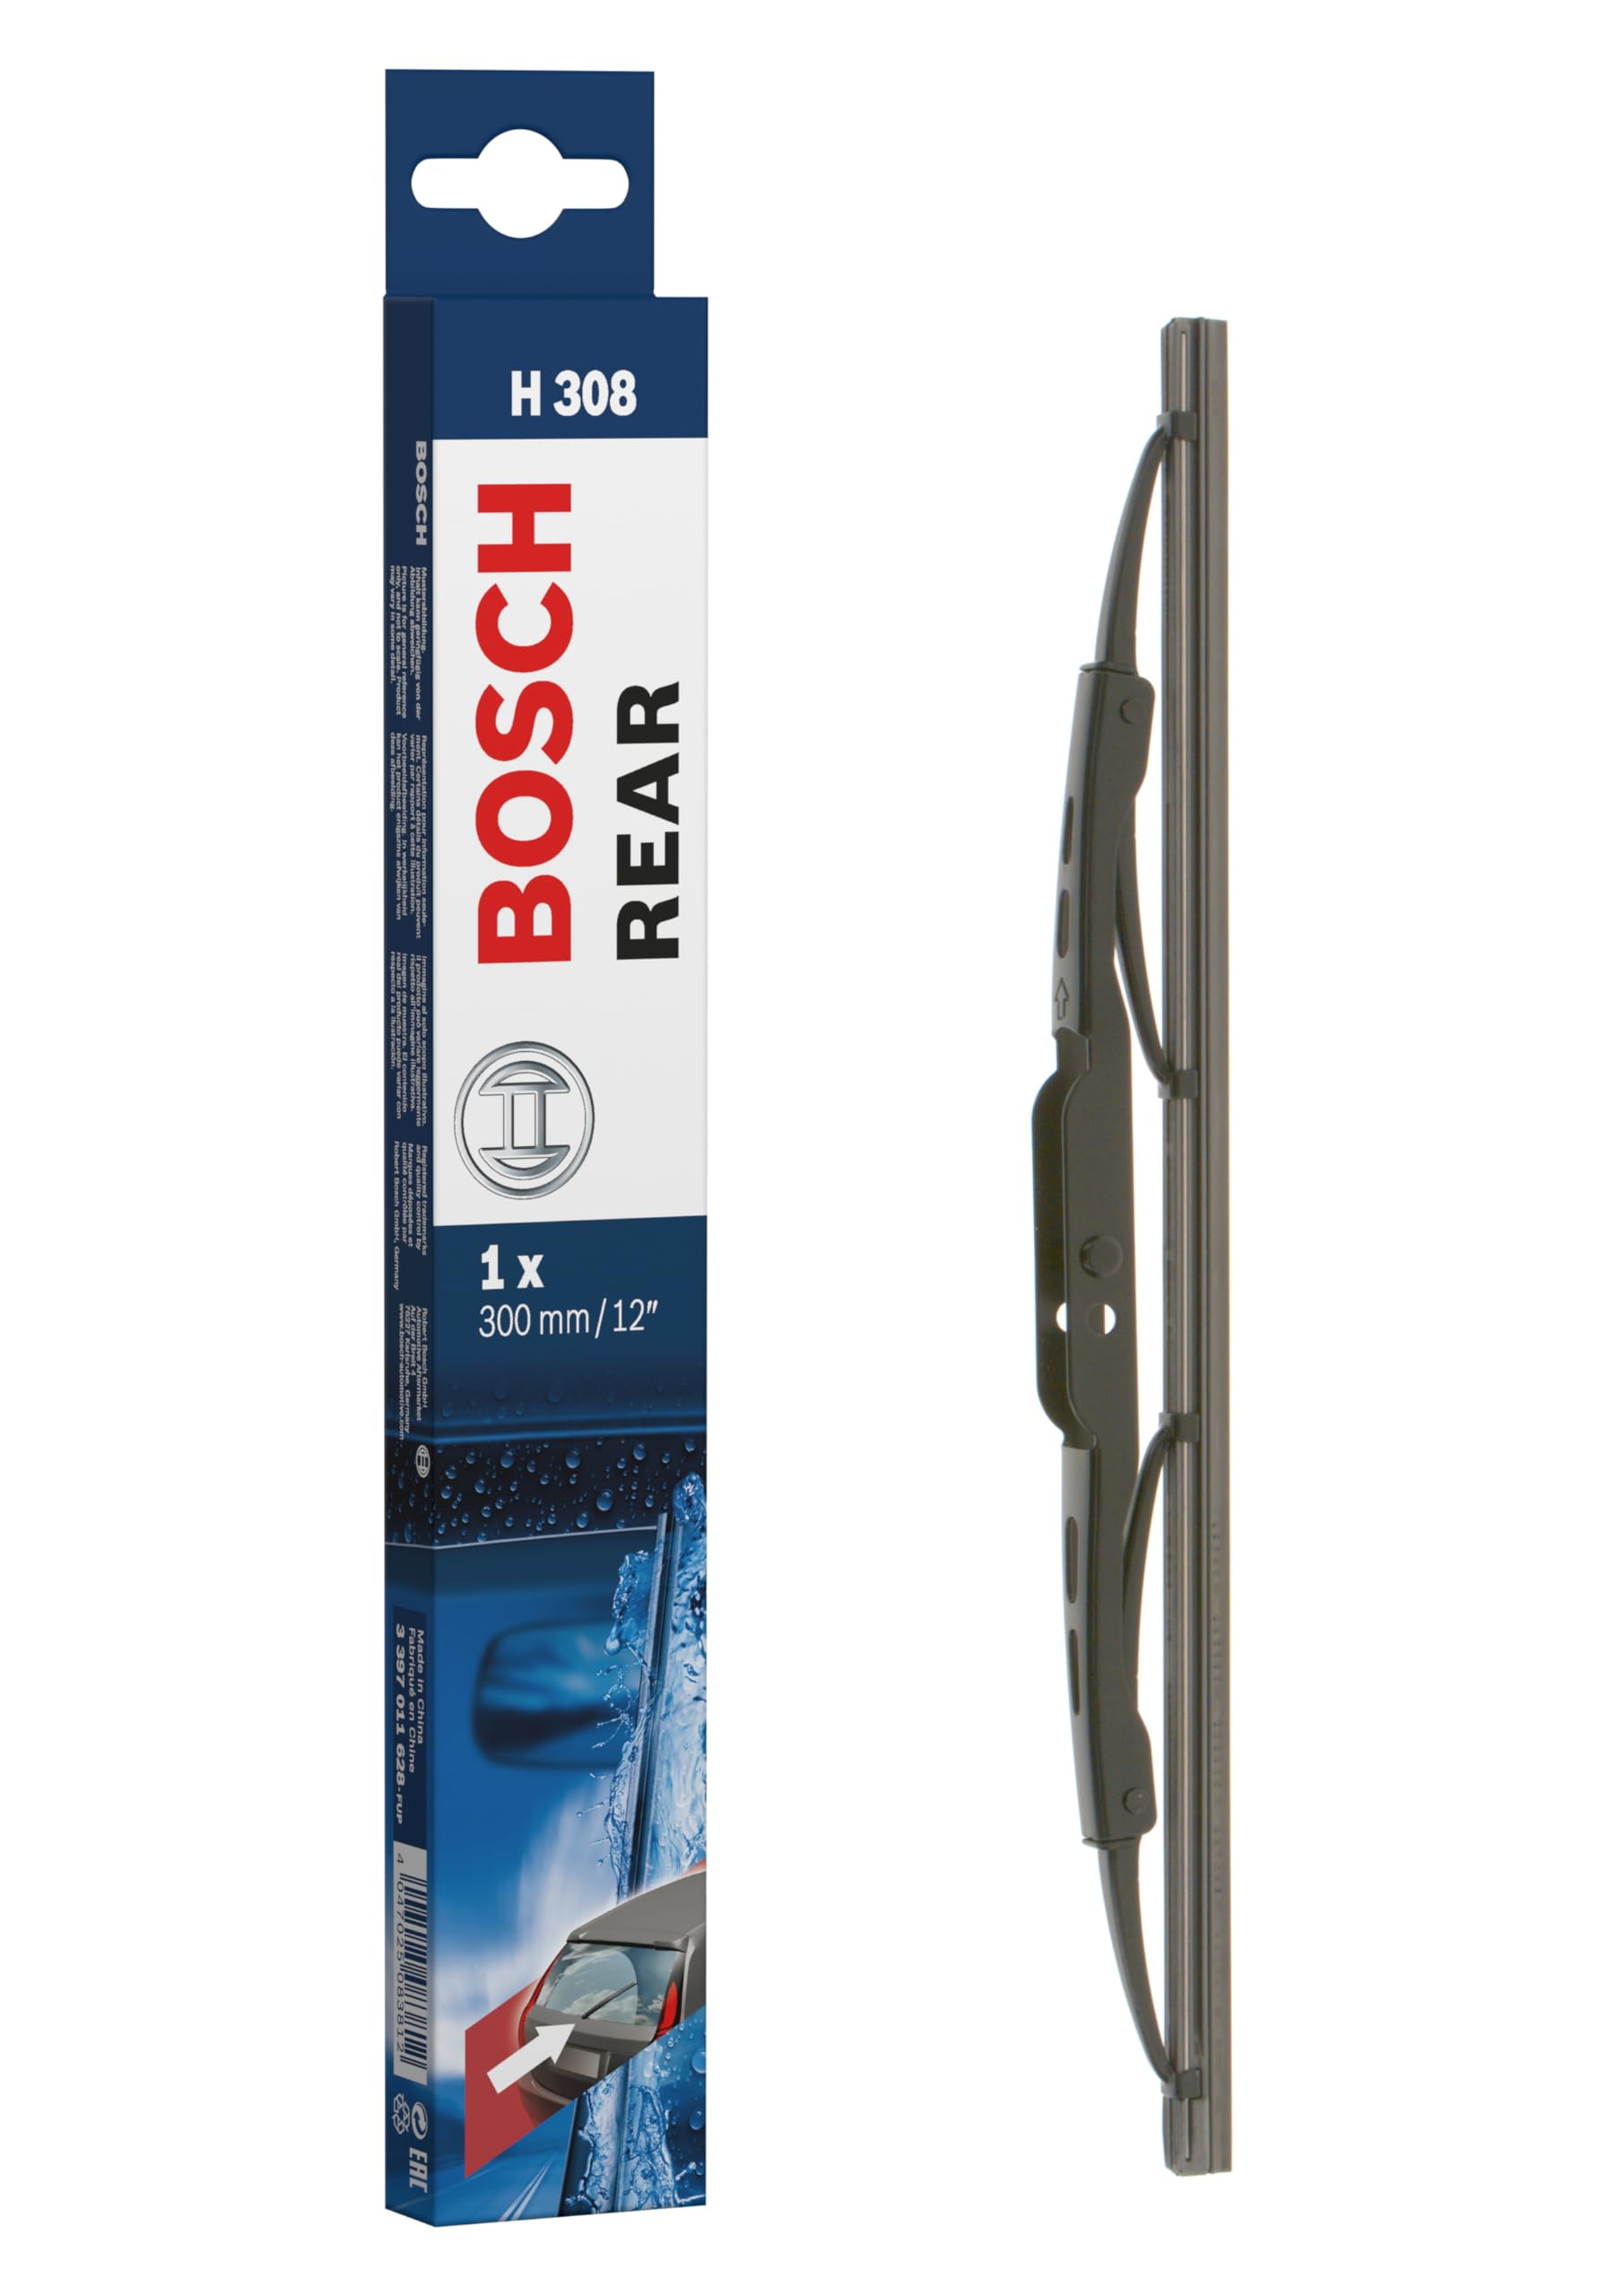 Bosch Scheibenwischer Rear H308, Länge: 300mm – Scheibenwischer für Heckscheibe von Bosch Automotive